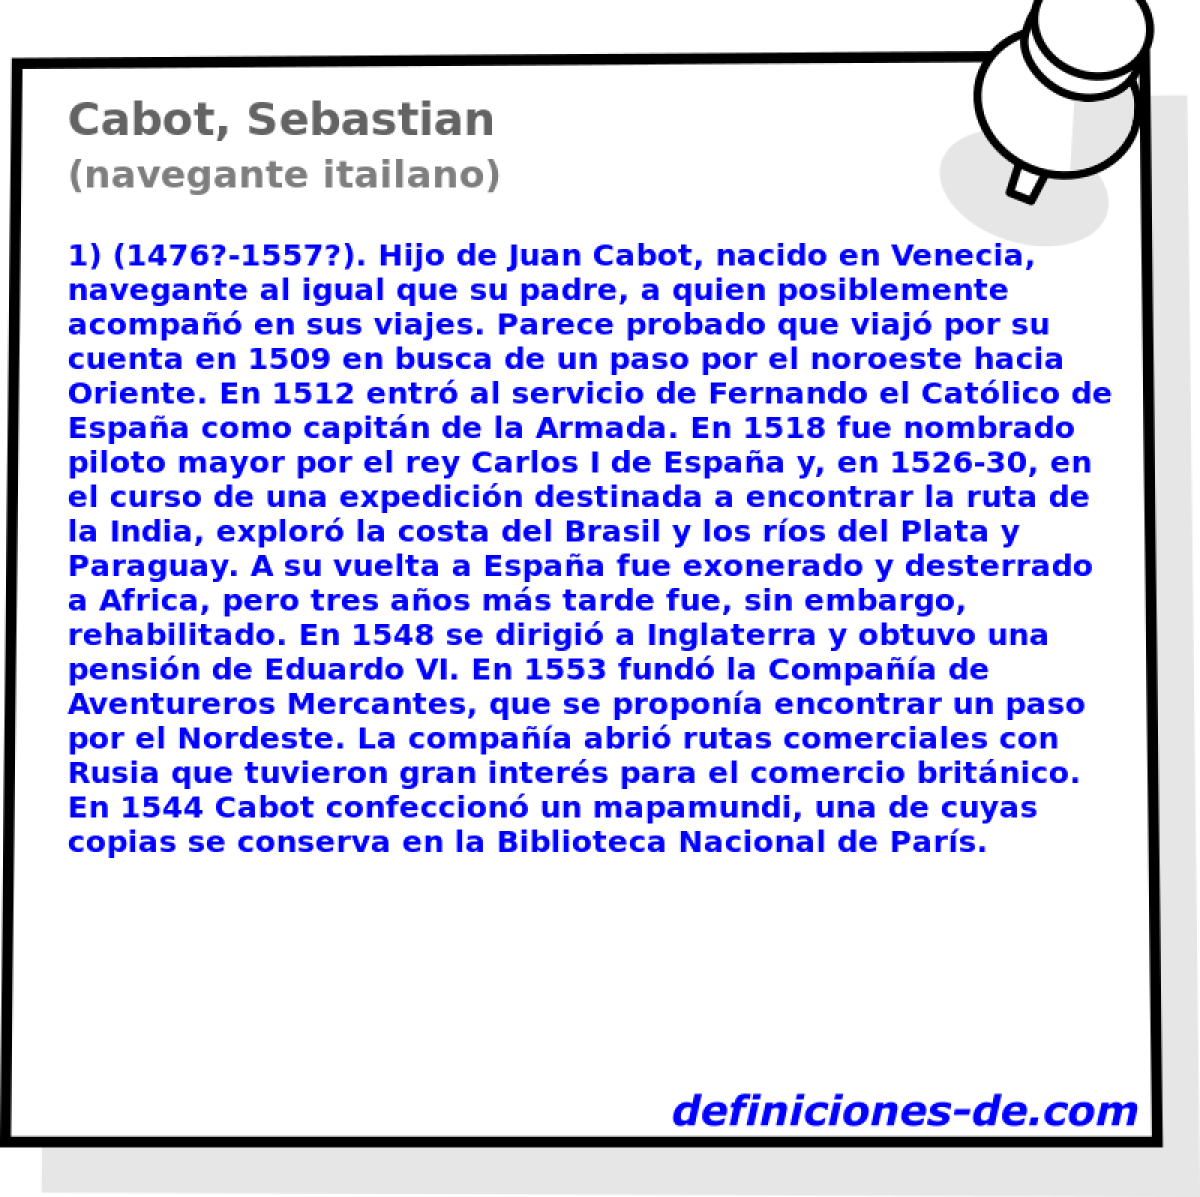 Cabot, Sebastian (navegante itailano)